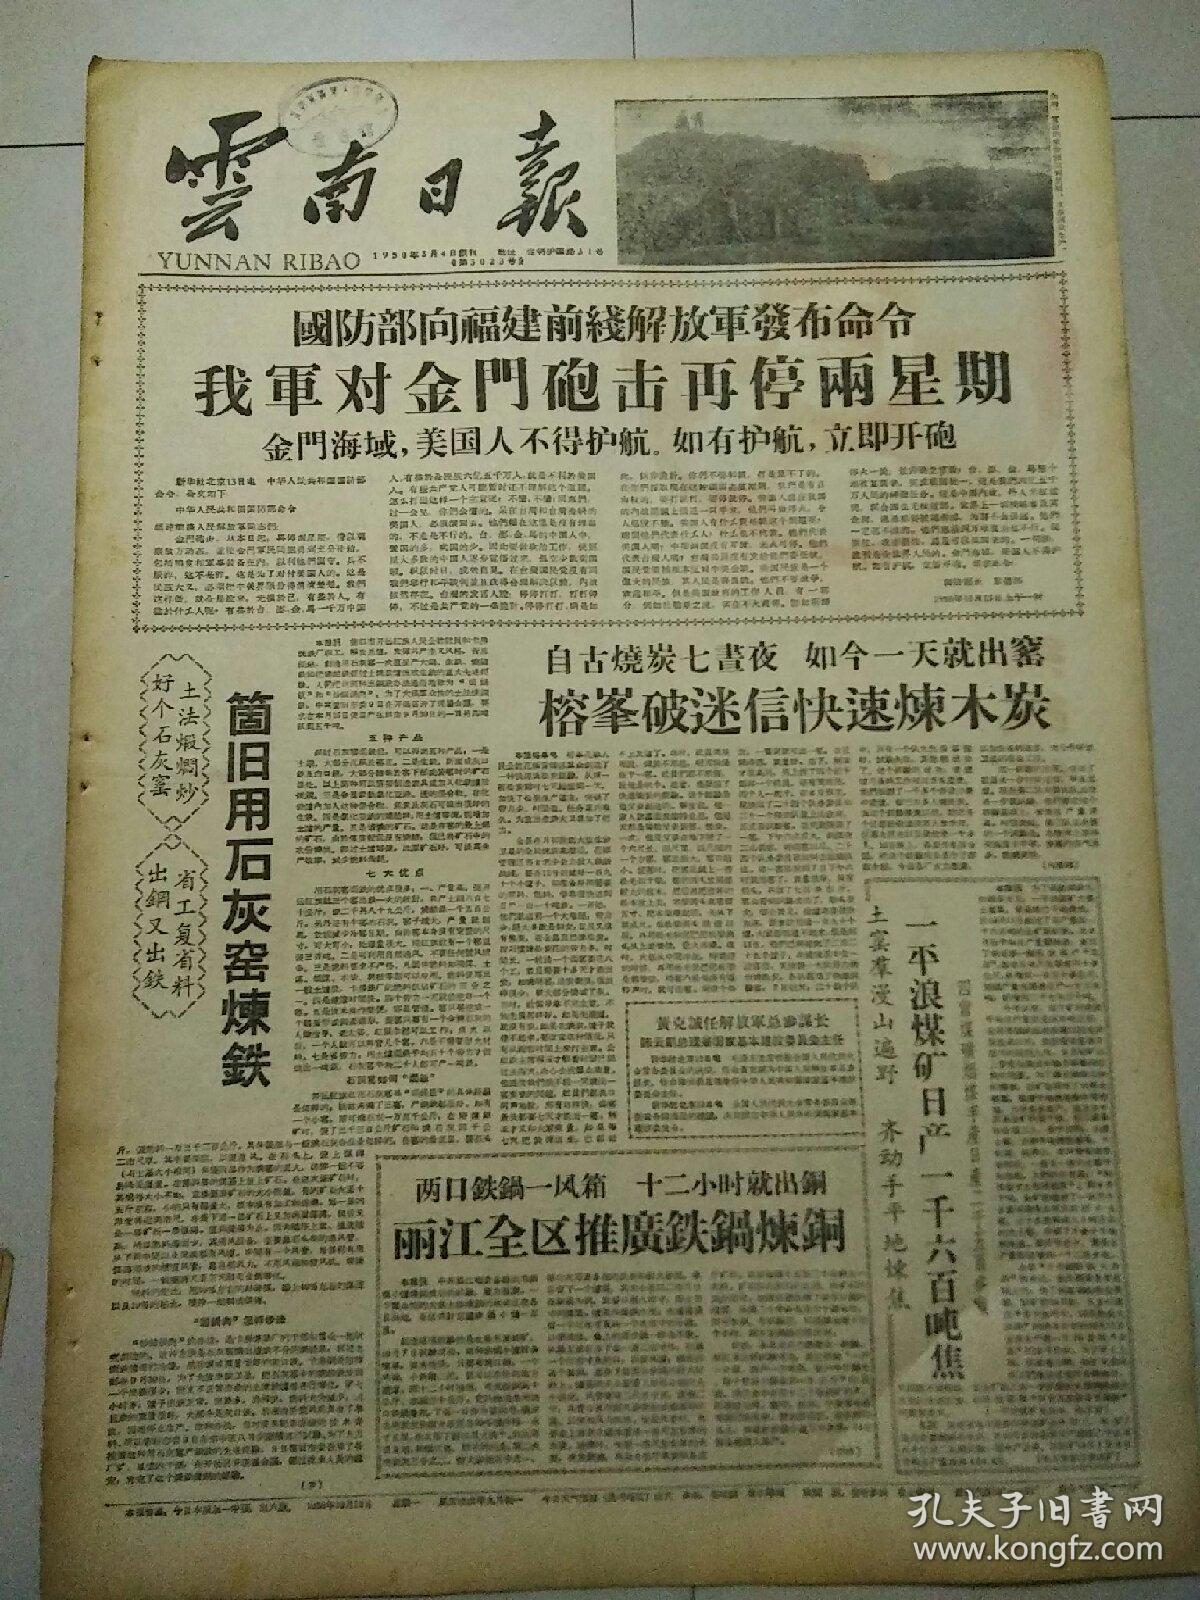 生日报云南日报1958年10月13日（4开六版）
丽江全区推广钢铁铜炼钢；
土专家曹依秀当选为科协全国委员会委员；